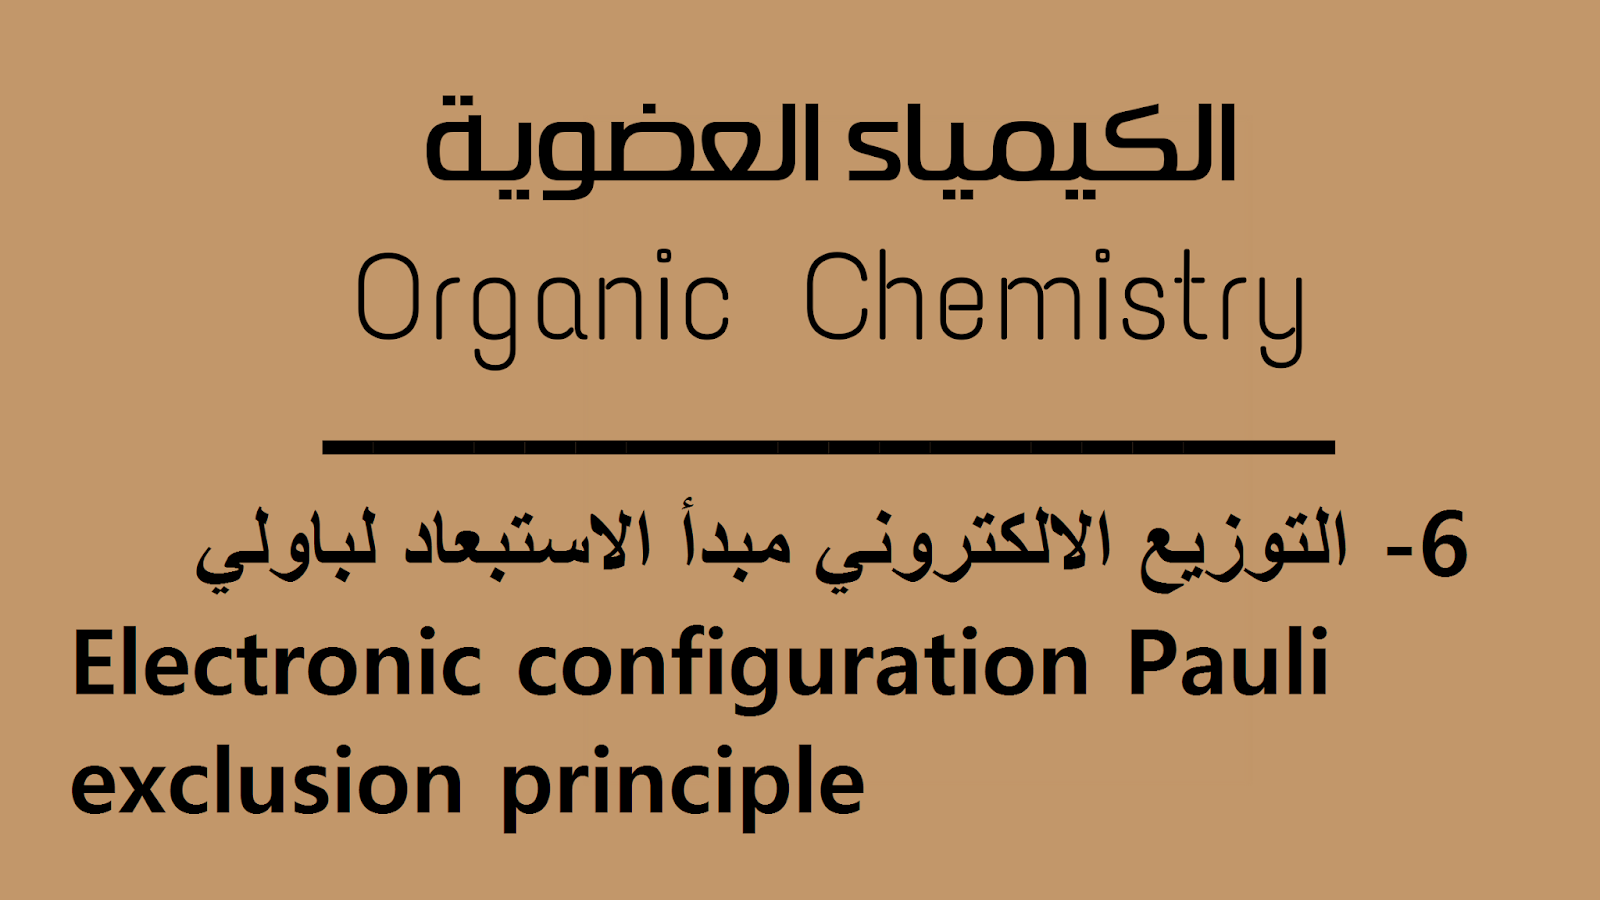  التوزيع الالكتروني مبدأ الاستبعاد لباولي -  Electronic configuration Pauli exclusion principle